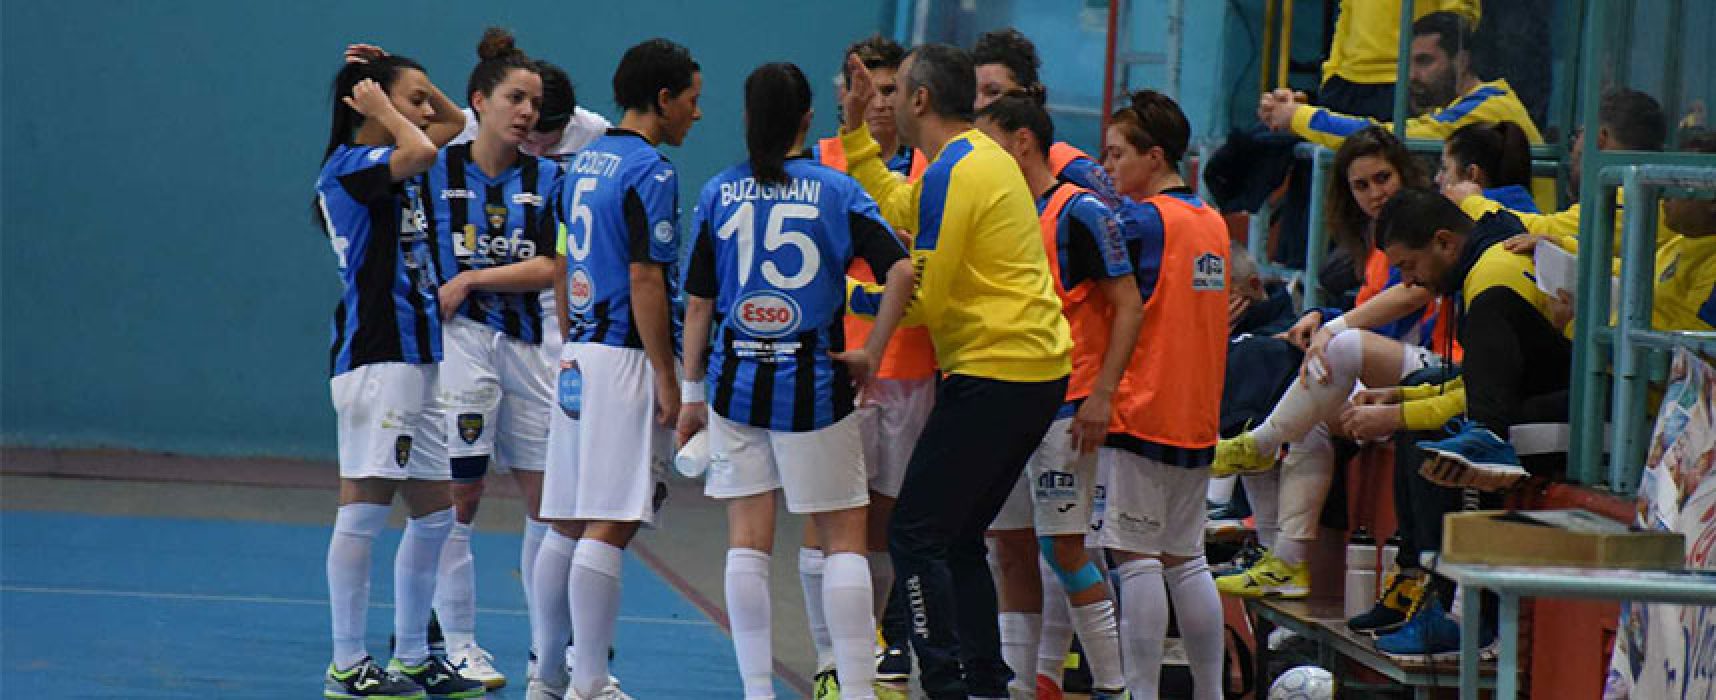 Futsal Florentia vittorioso al PalaDolmen contro il Bisceglie Femminile